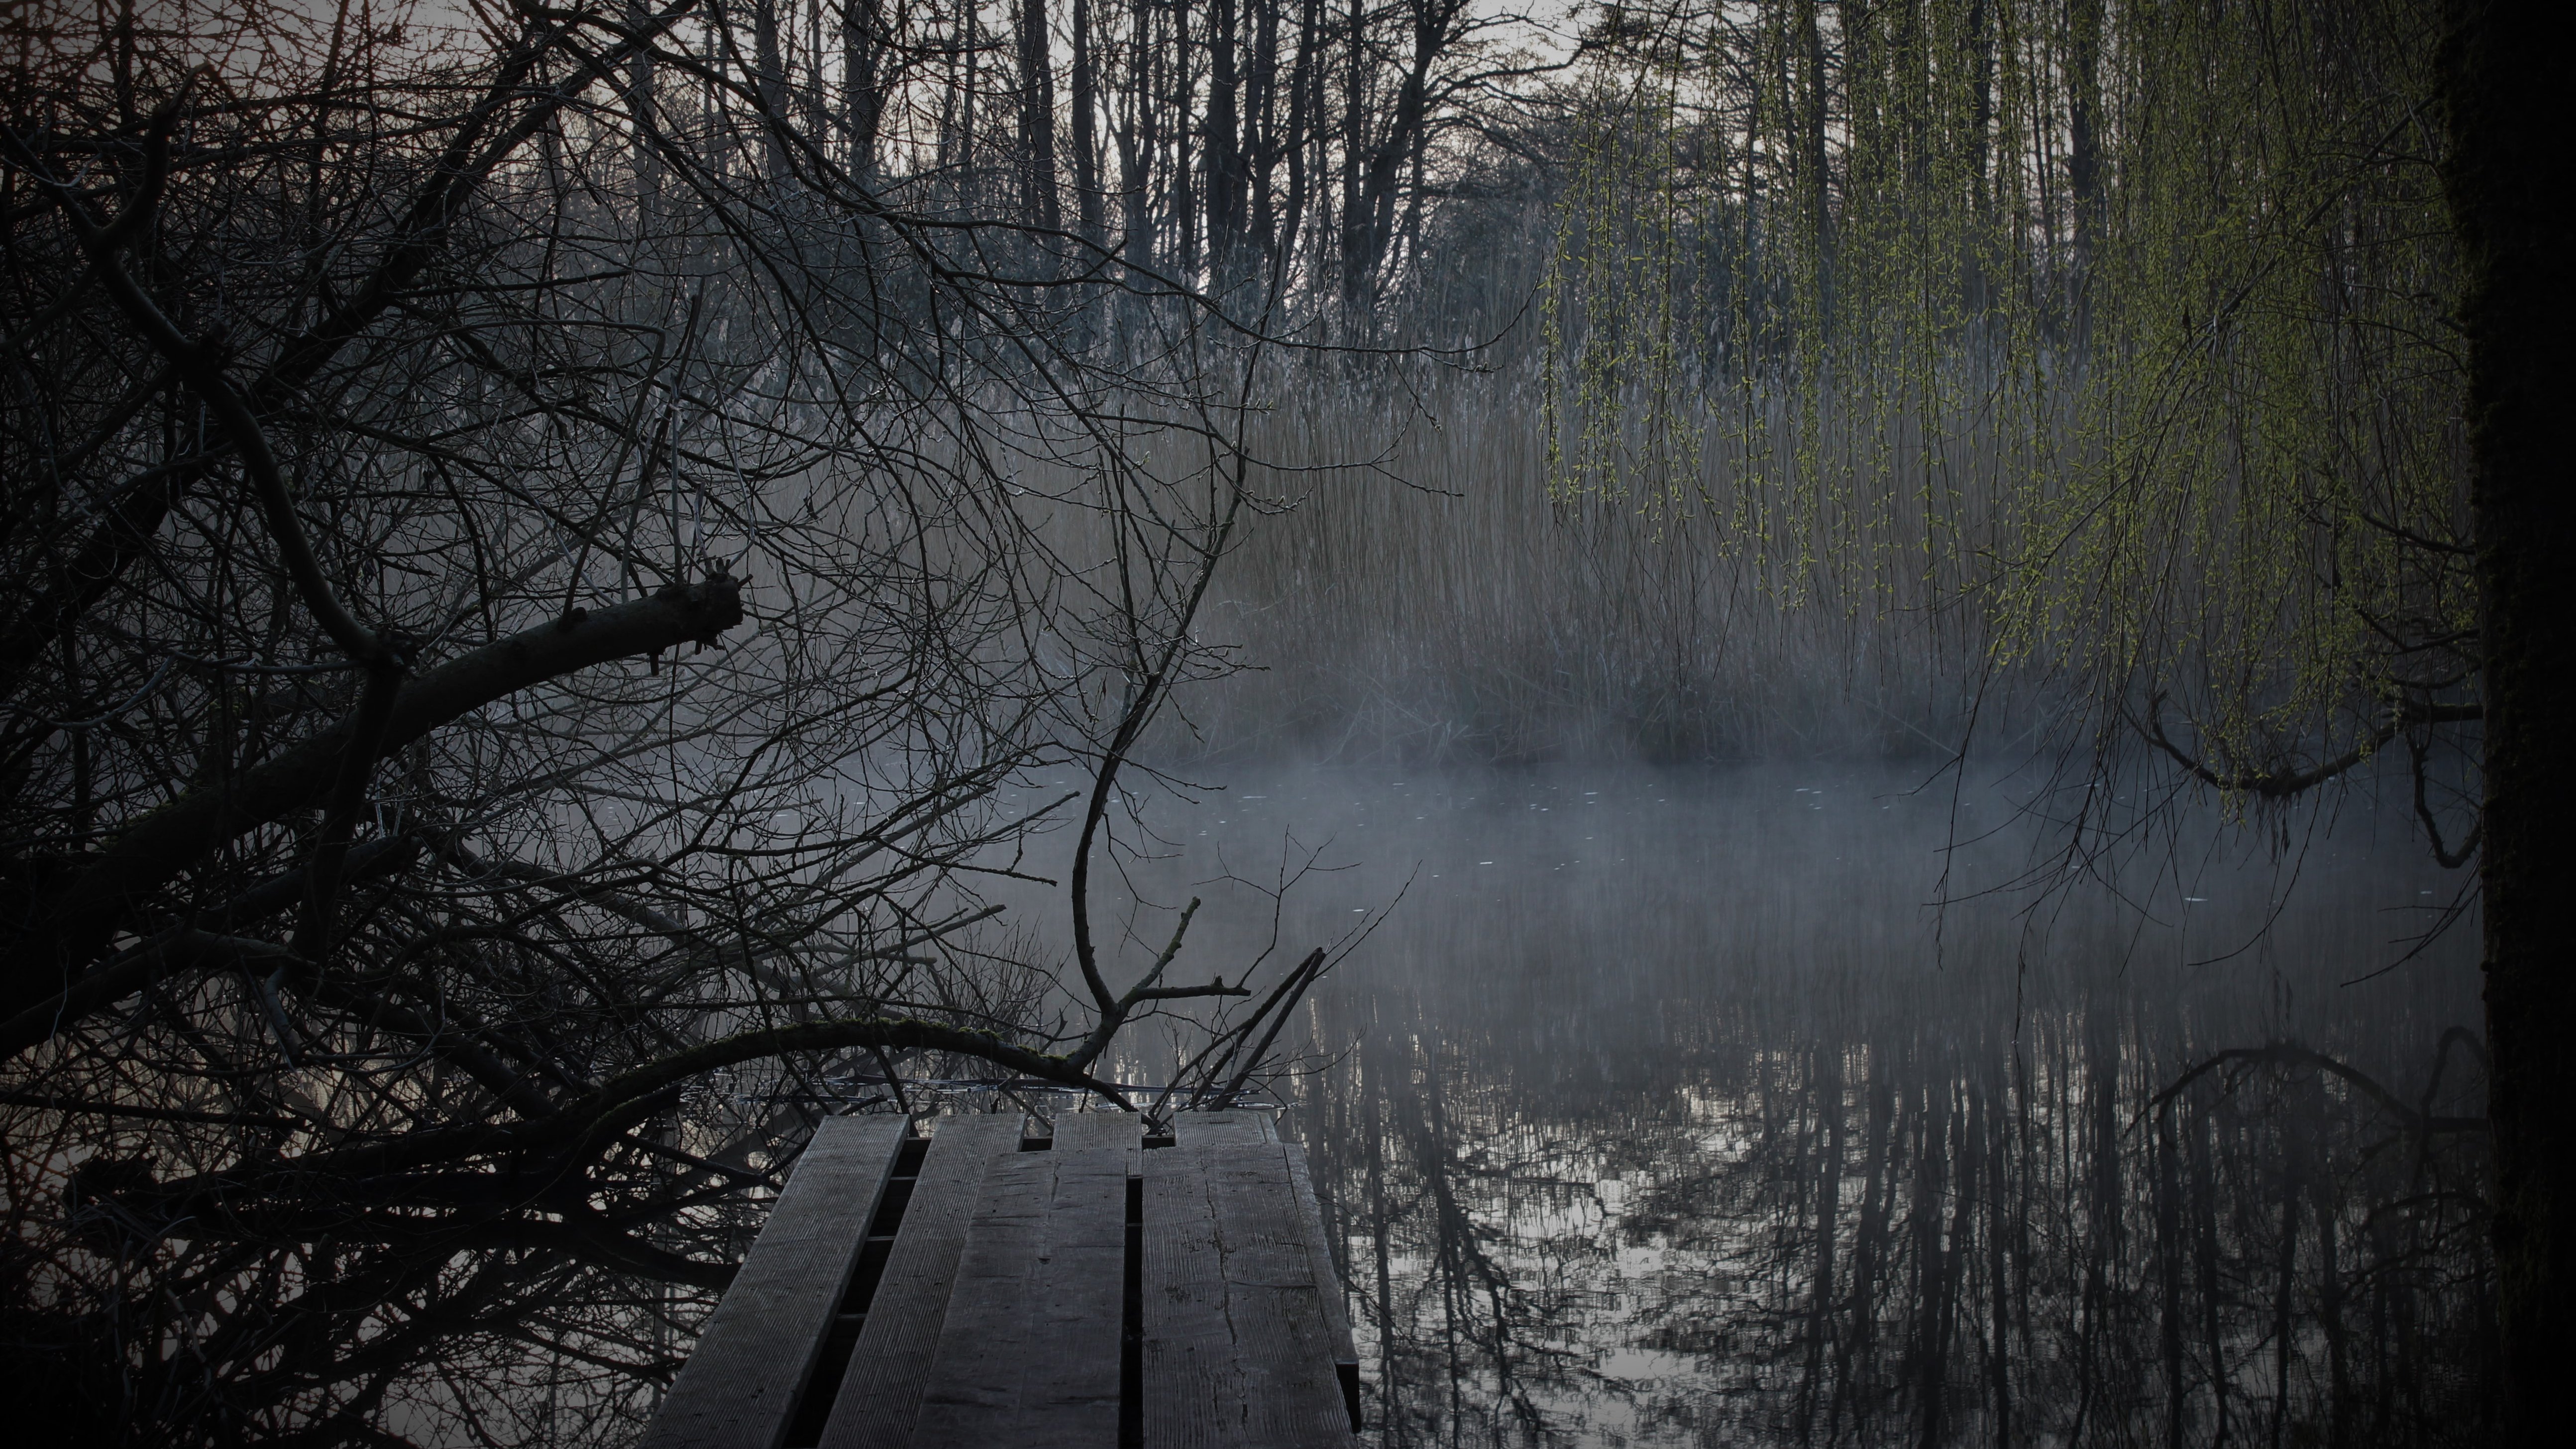 Ein Steg aus Holz führt in einen See, zu sehen sind die Wasseroberfläche, leichter Nebel, Schilf und Bäume im Hintergrund, die Bäume spiegel sich auf der Wasseroberfläche